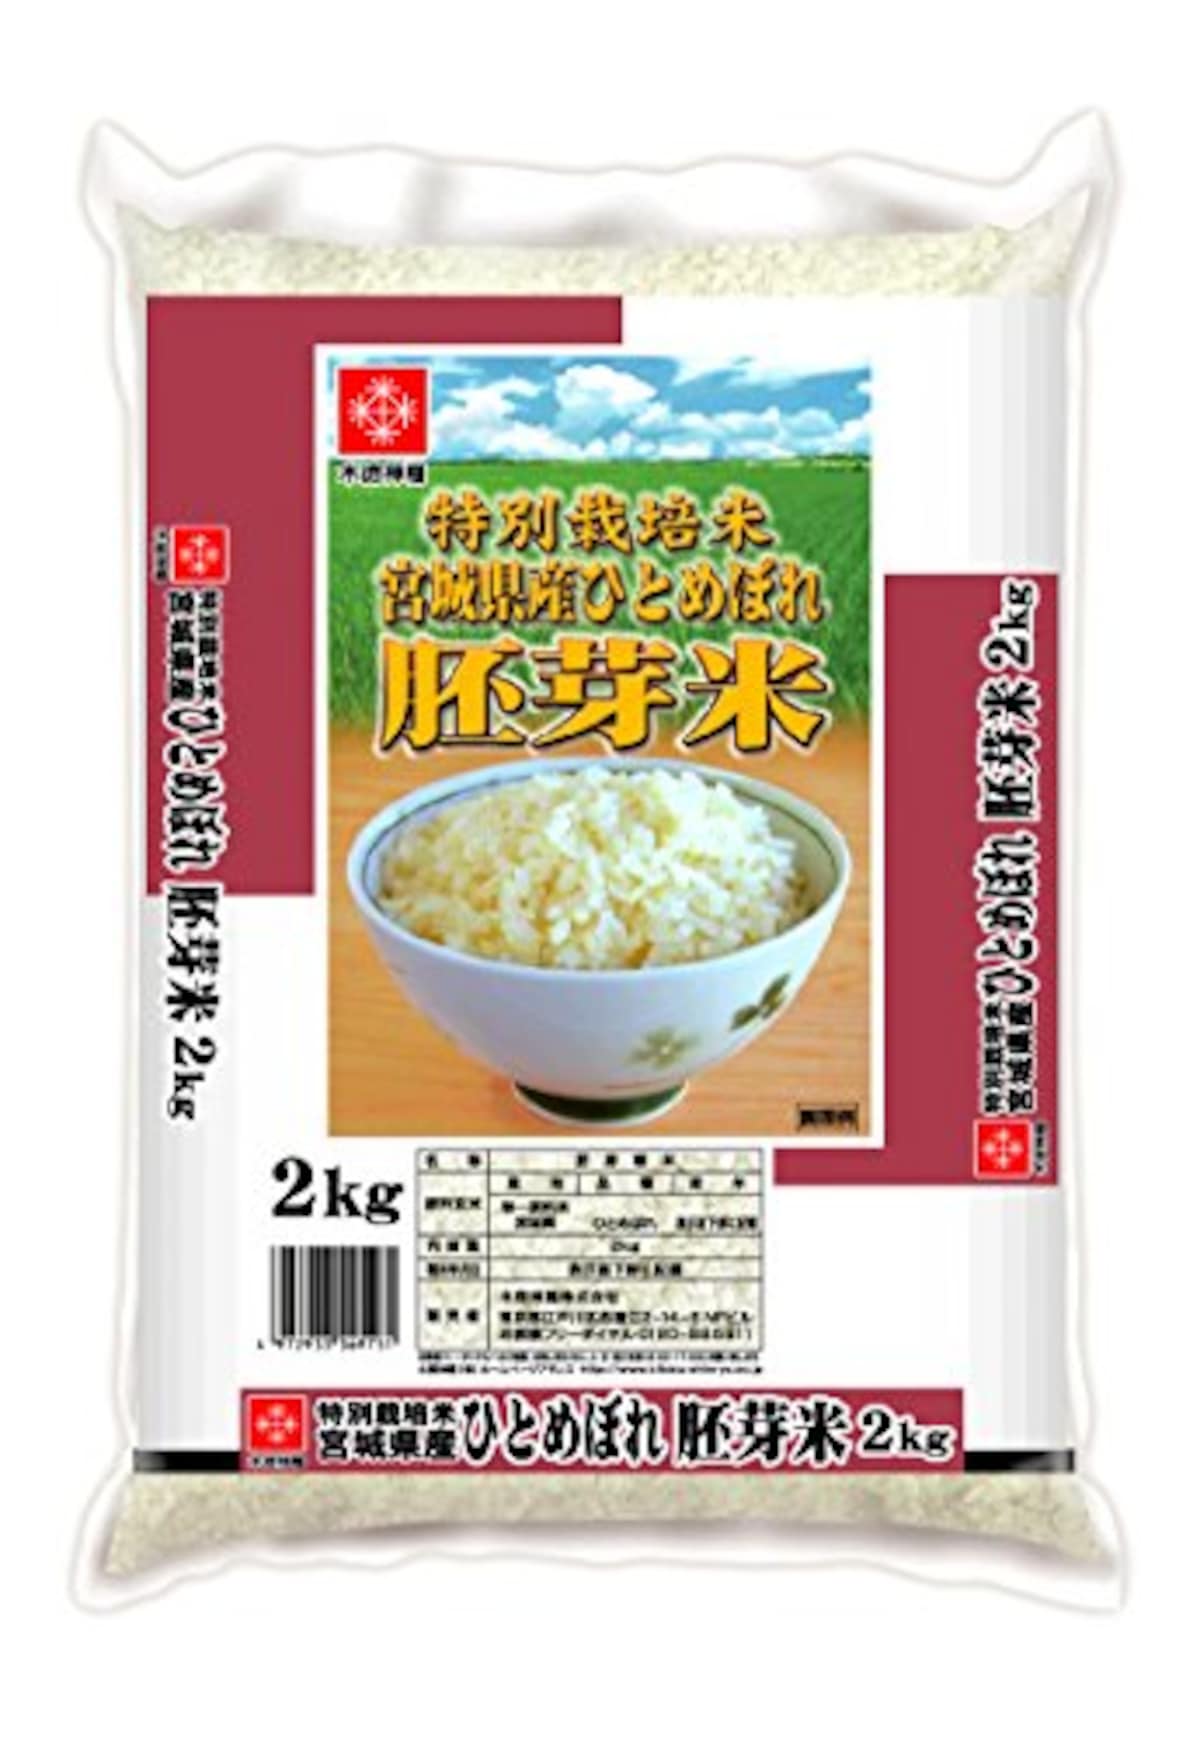 特別栽培米 胚芽米 ひとめぼれ